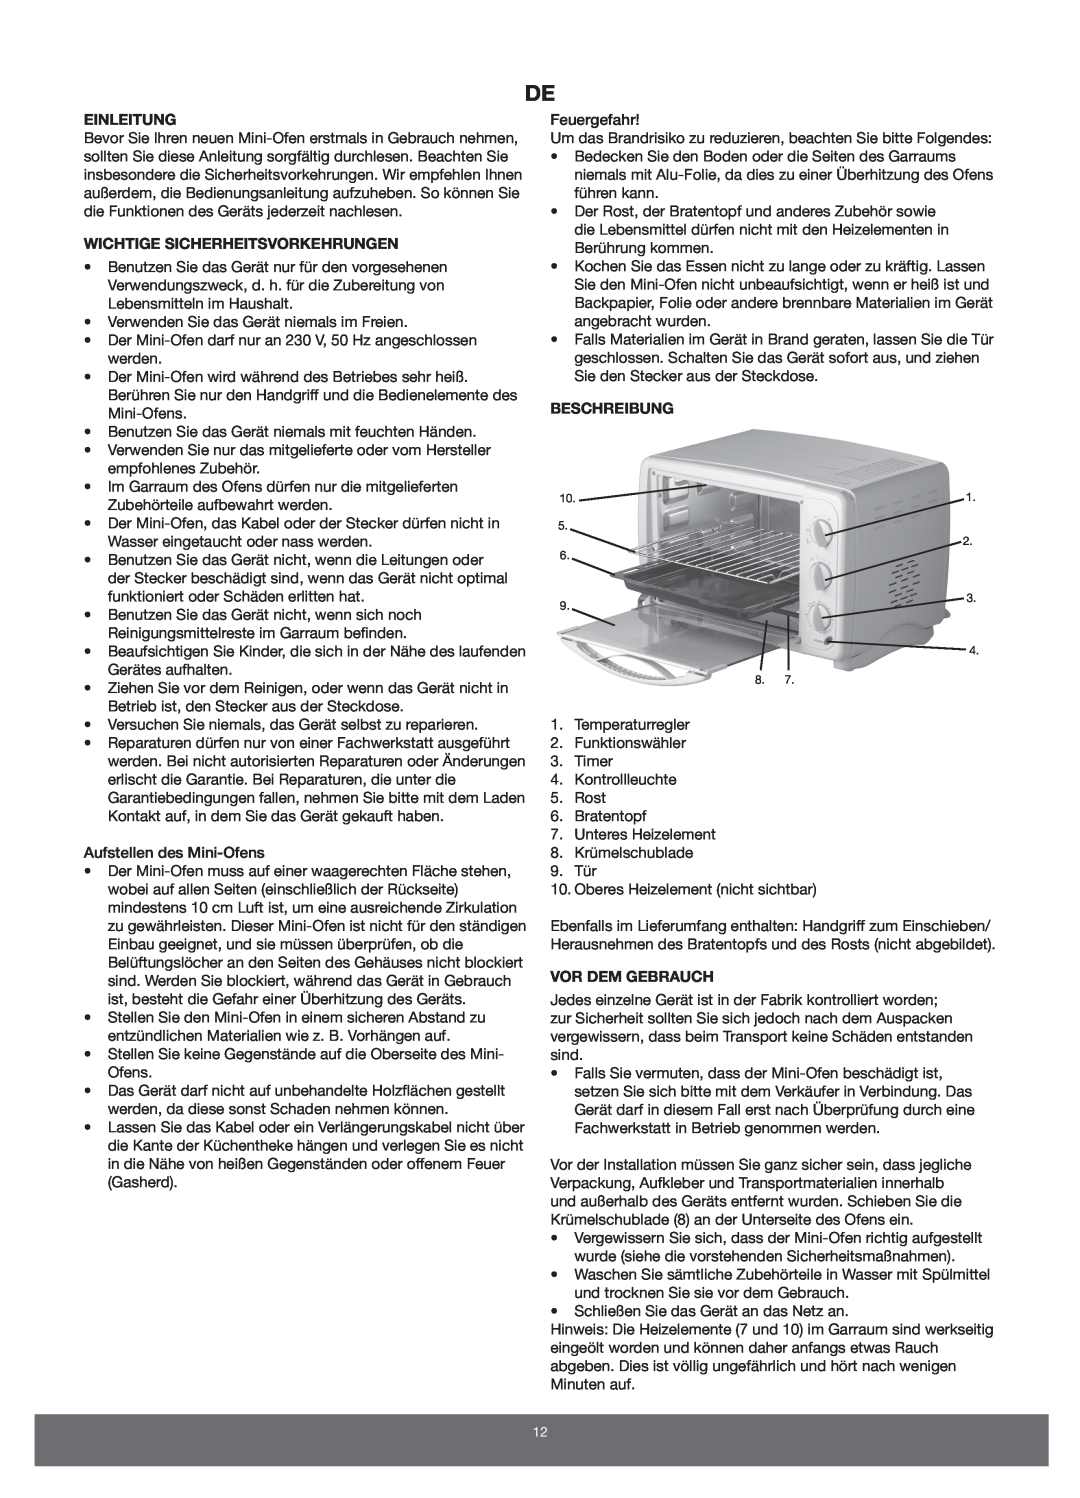 Melissa 651-007 manual Einleitung, Wichtige Sicherheitsvorkehrungen, Beschreibung, Vor Dem Gebrauch 